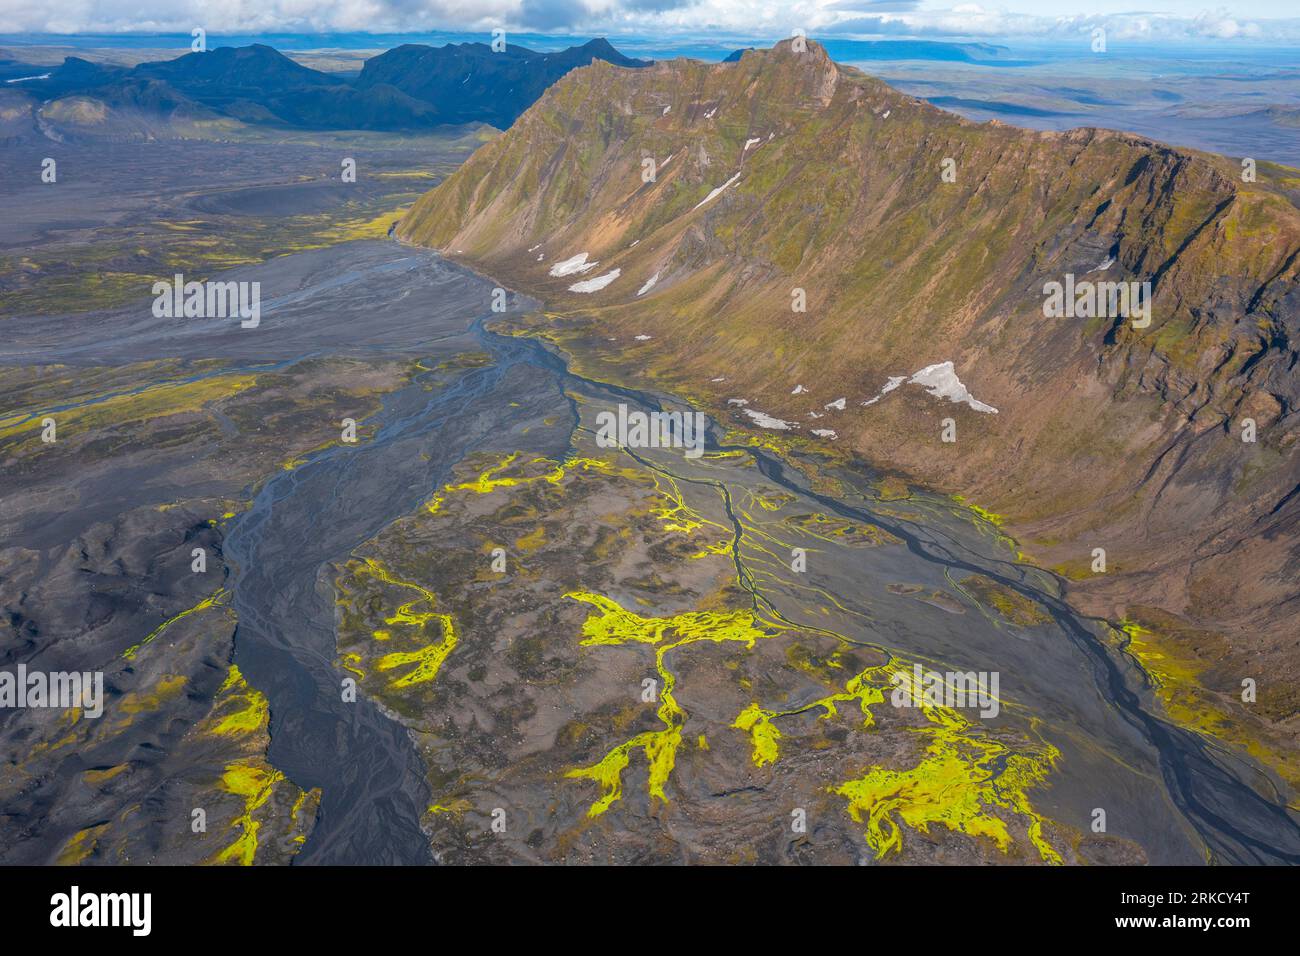 Motifs de végétation jaune sur les plaines volcaniques, hautes terres islandaises, Islande Banque D'Images